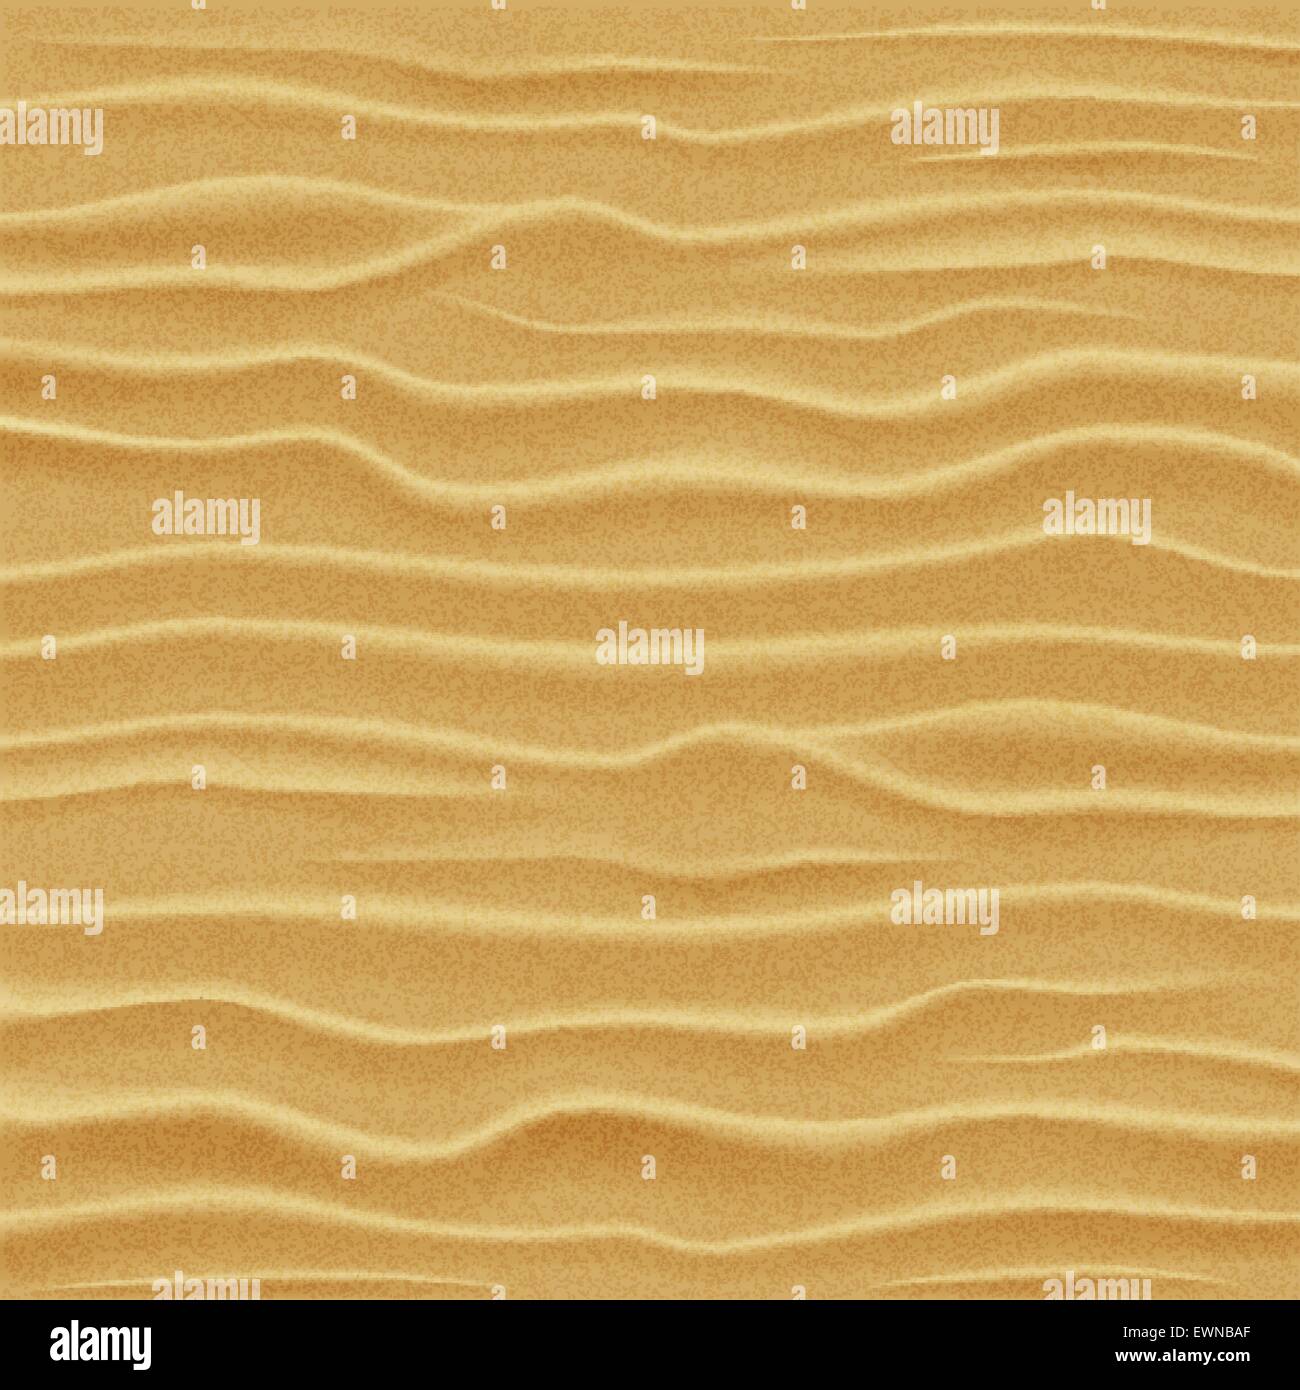 La consistenza della sabbia. Dune di sabbia del deserto - vista da una altezza. Illustrazione Vettoriale. Illustrazione Vettoriale